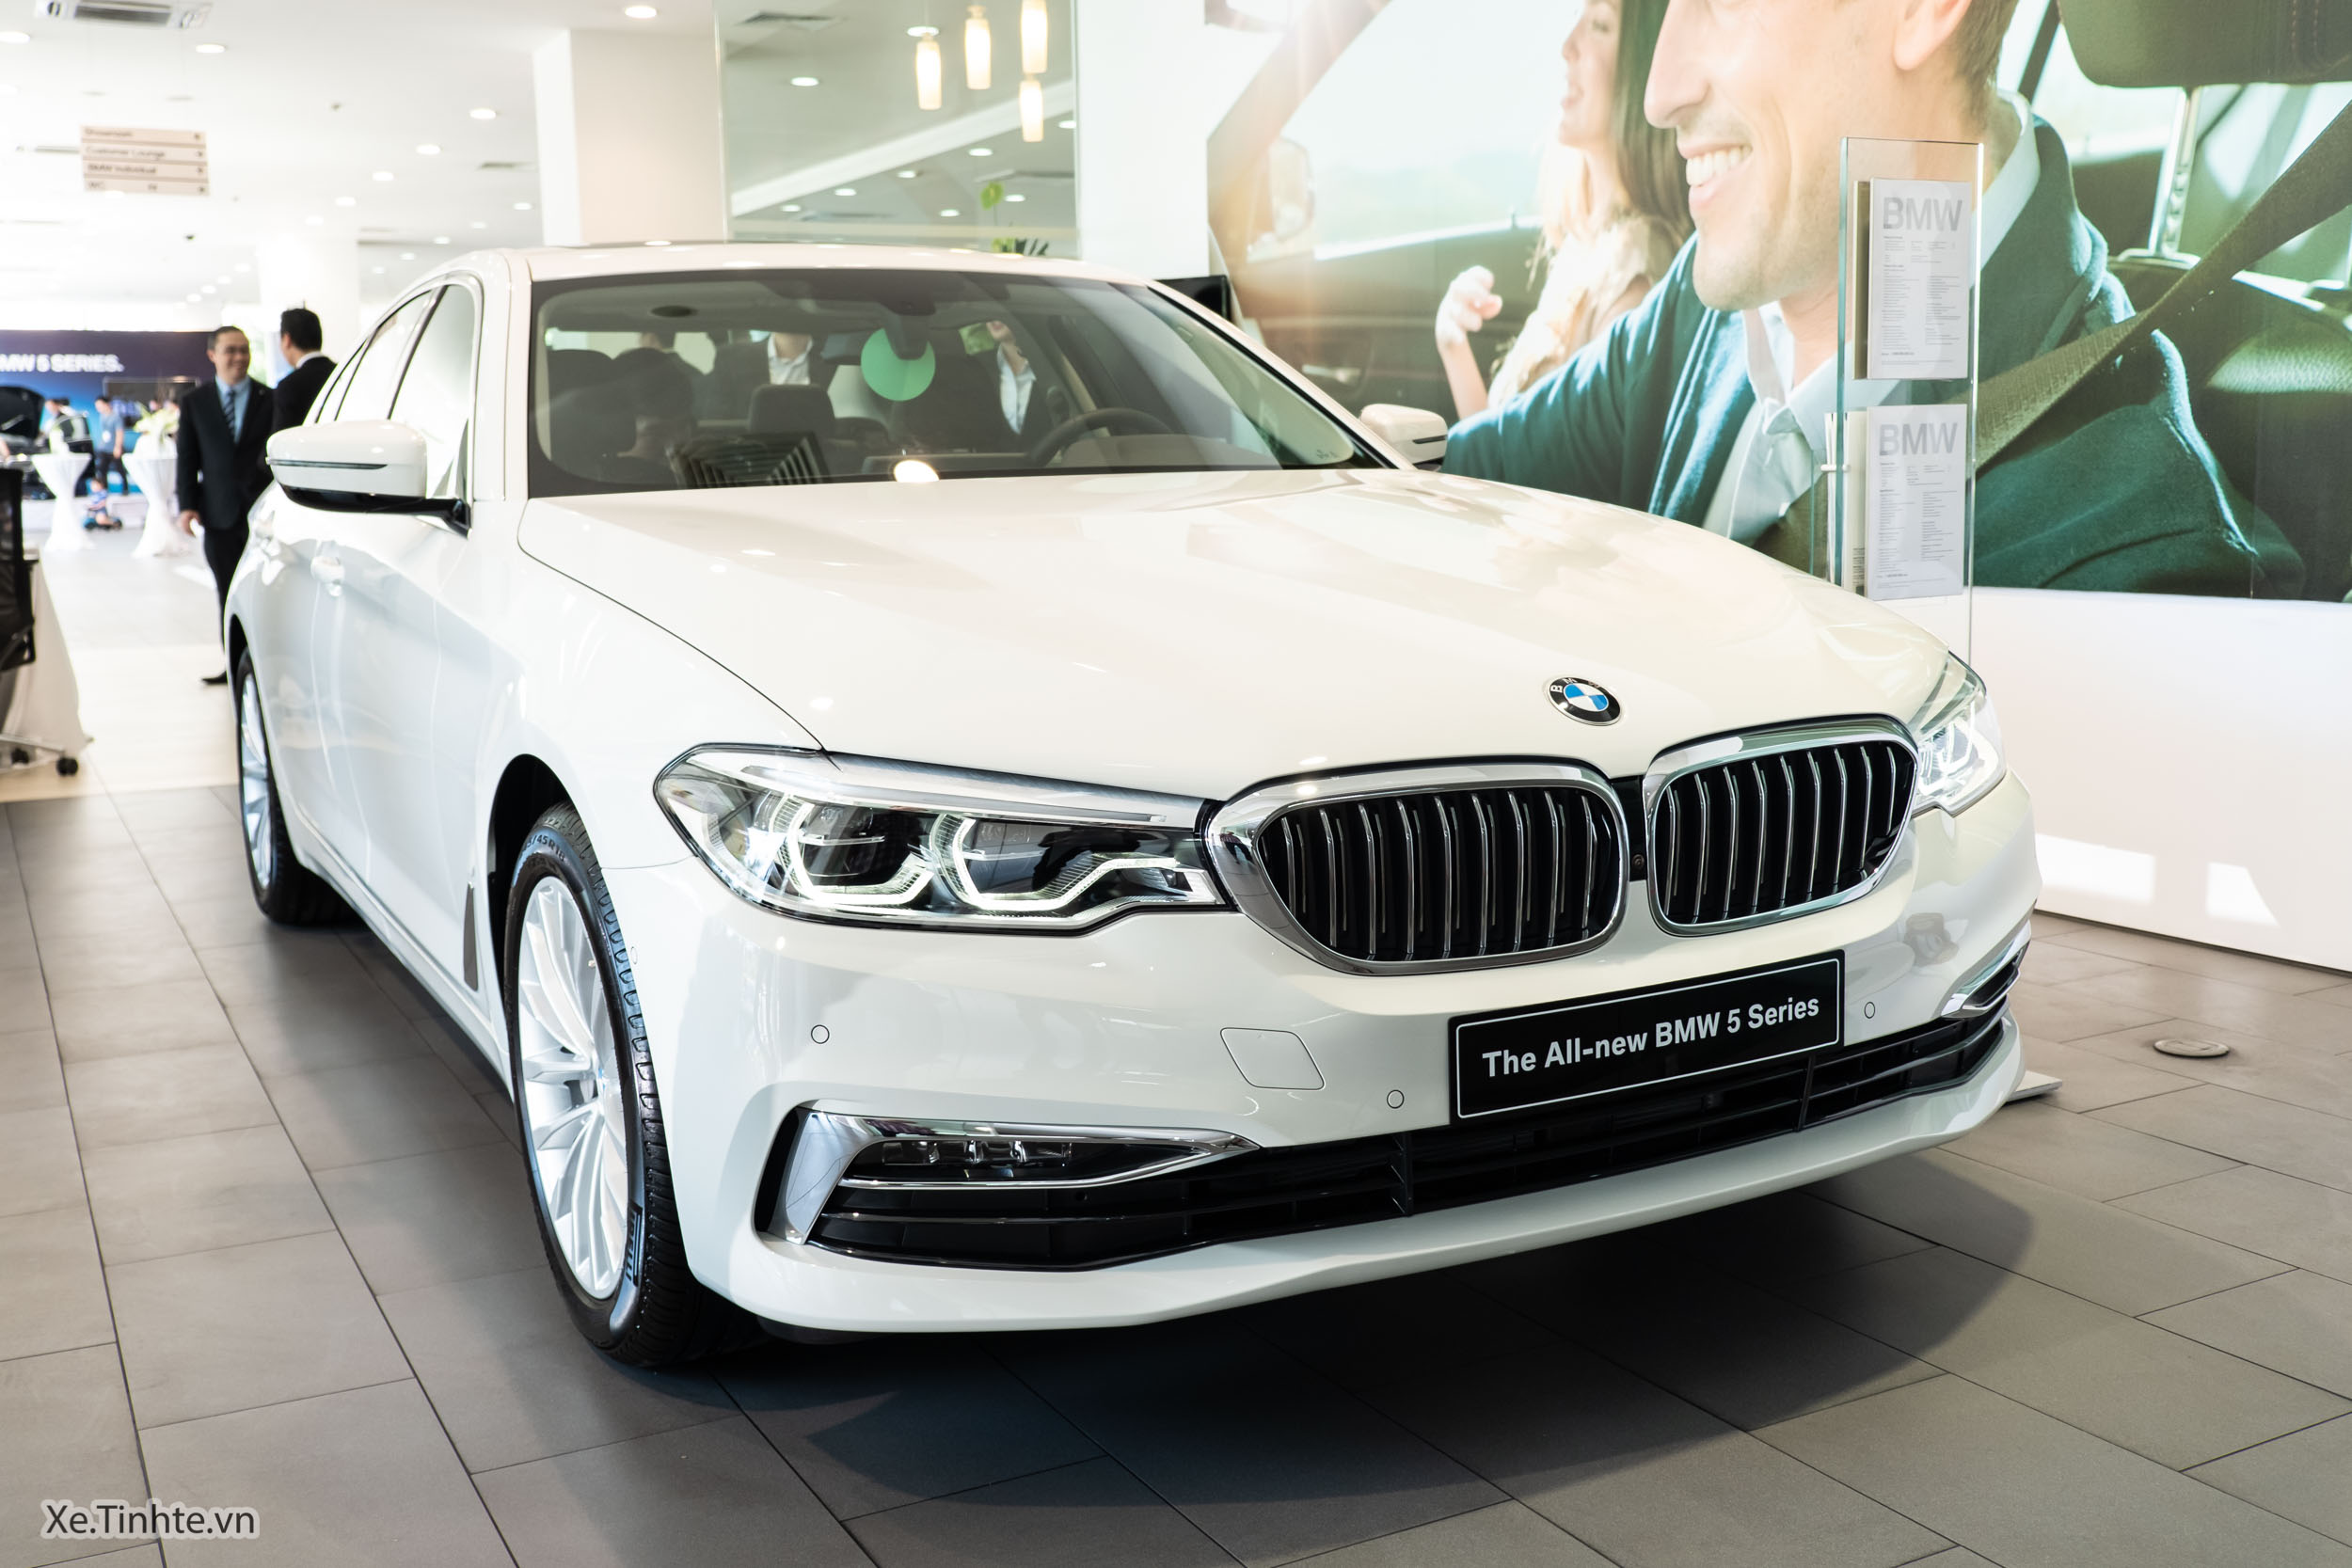 BMW_5-Series 2019_Xe.tinhte.vn-0625.jpg